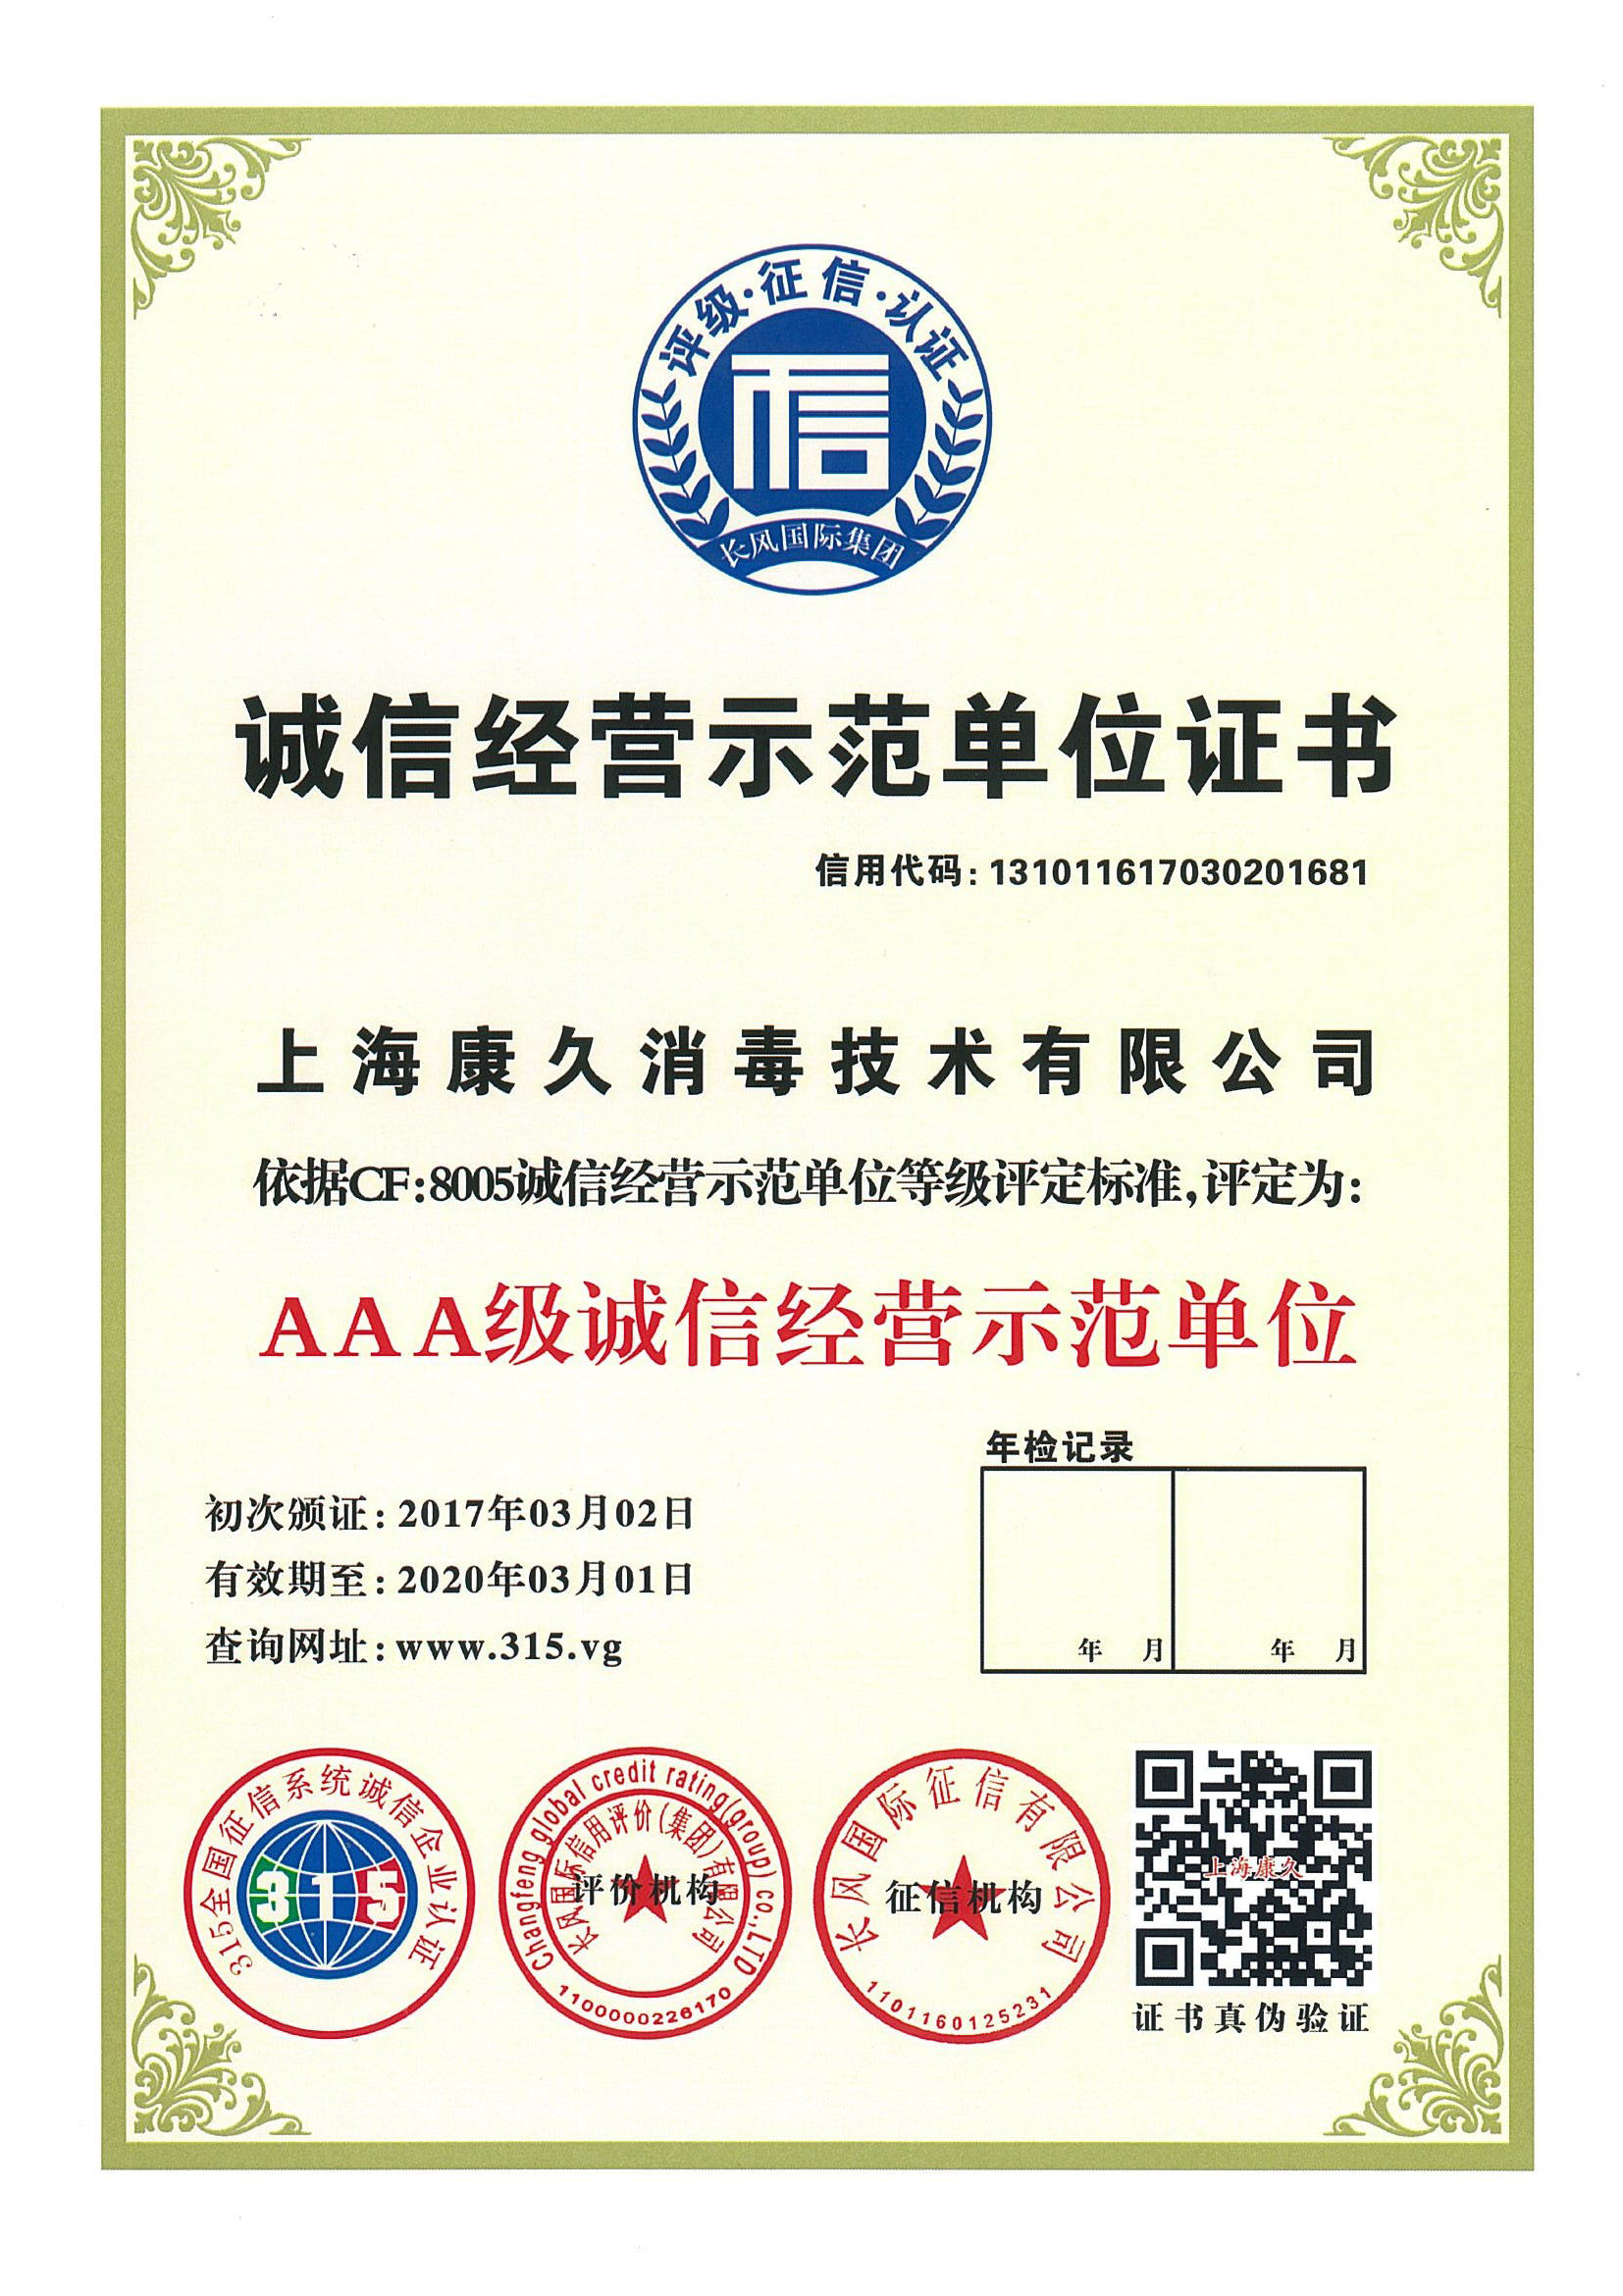 “九龙坡诚信经营示范单位证书